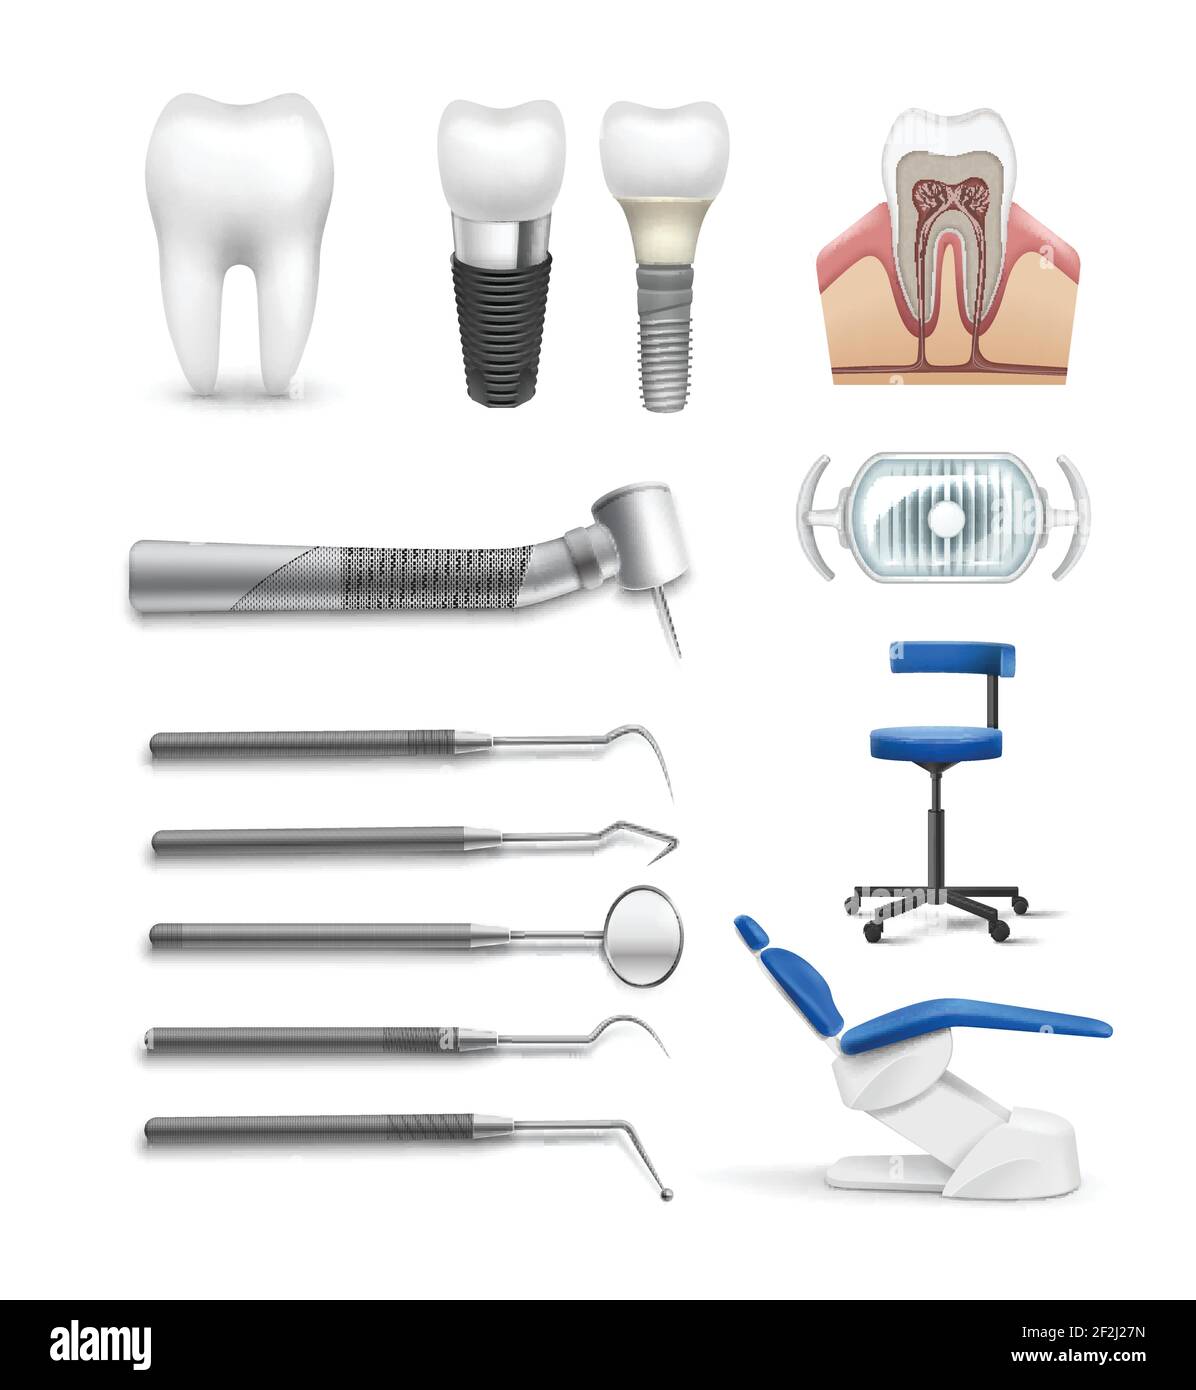 Vektor-Set von verschiedenen zahnmedizinischen Objekten Werkzeuge, Lampenstuhl, Bohrer, Zahnimplantat und Struktur isoliert auf weißem Hintergrund Stock Vektor